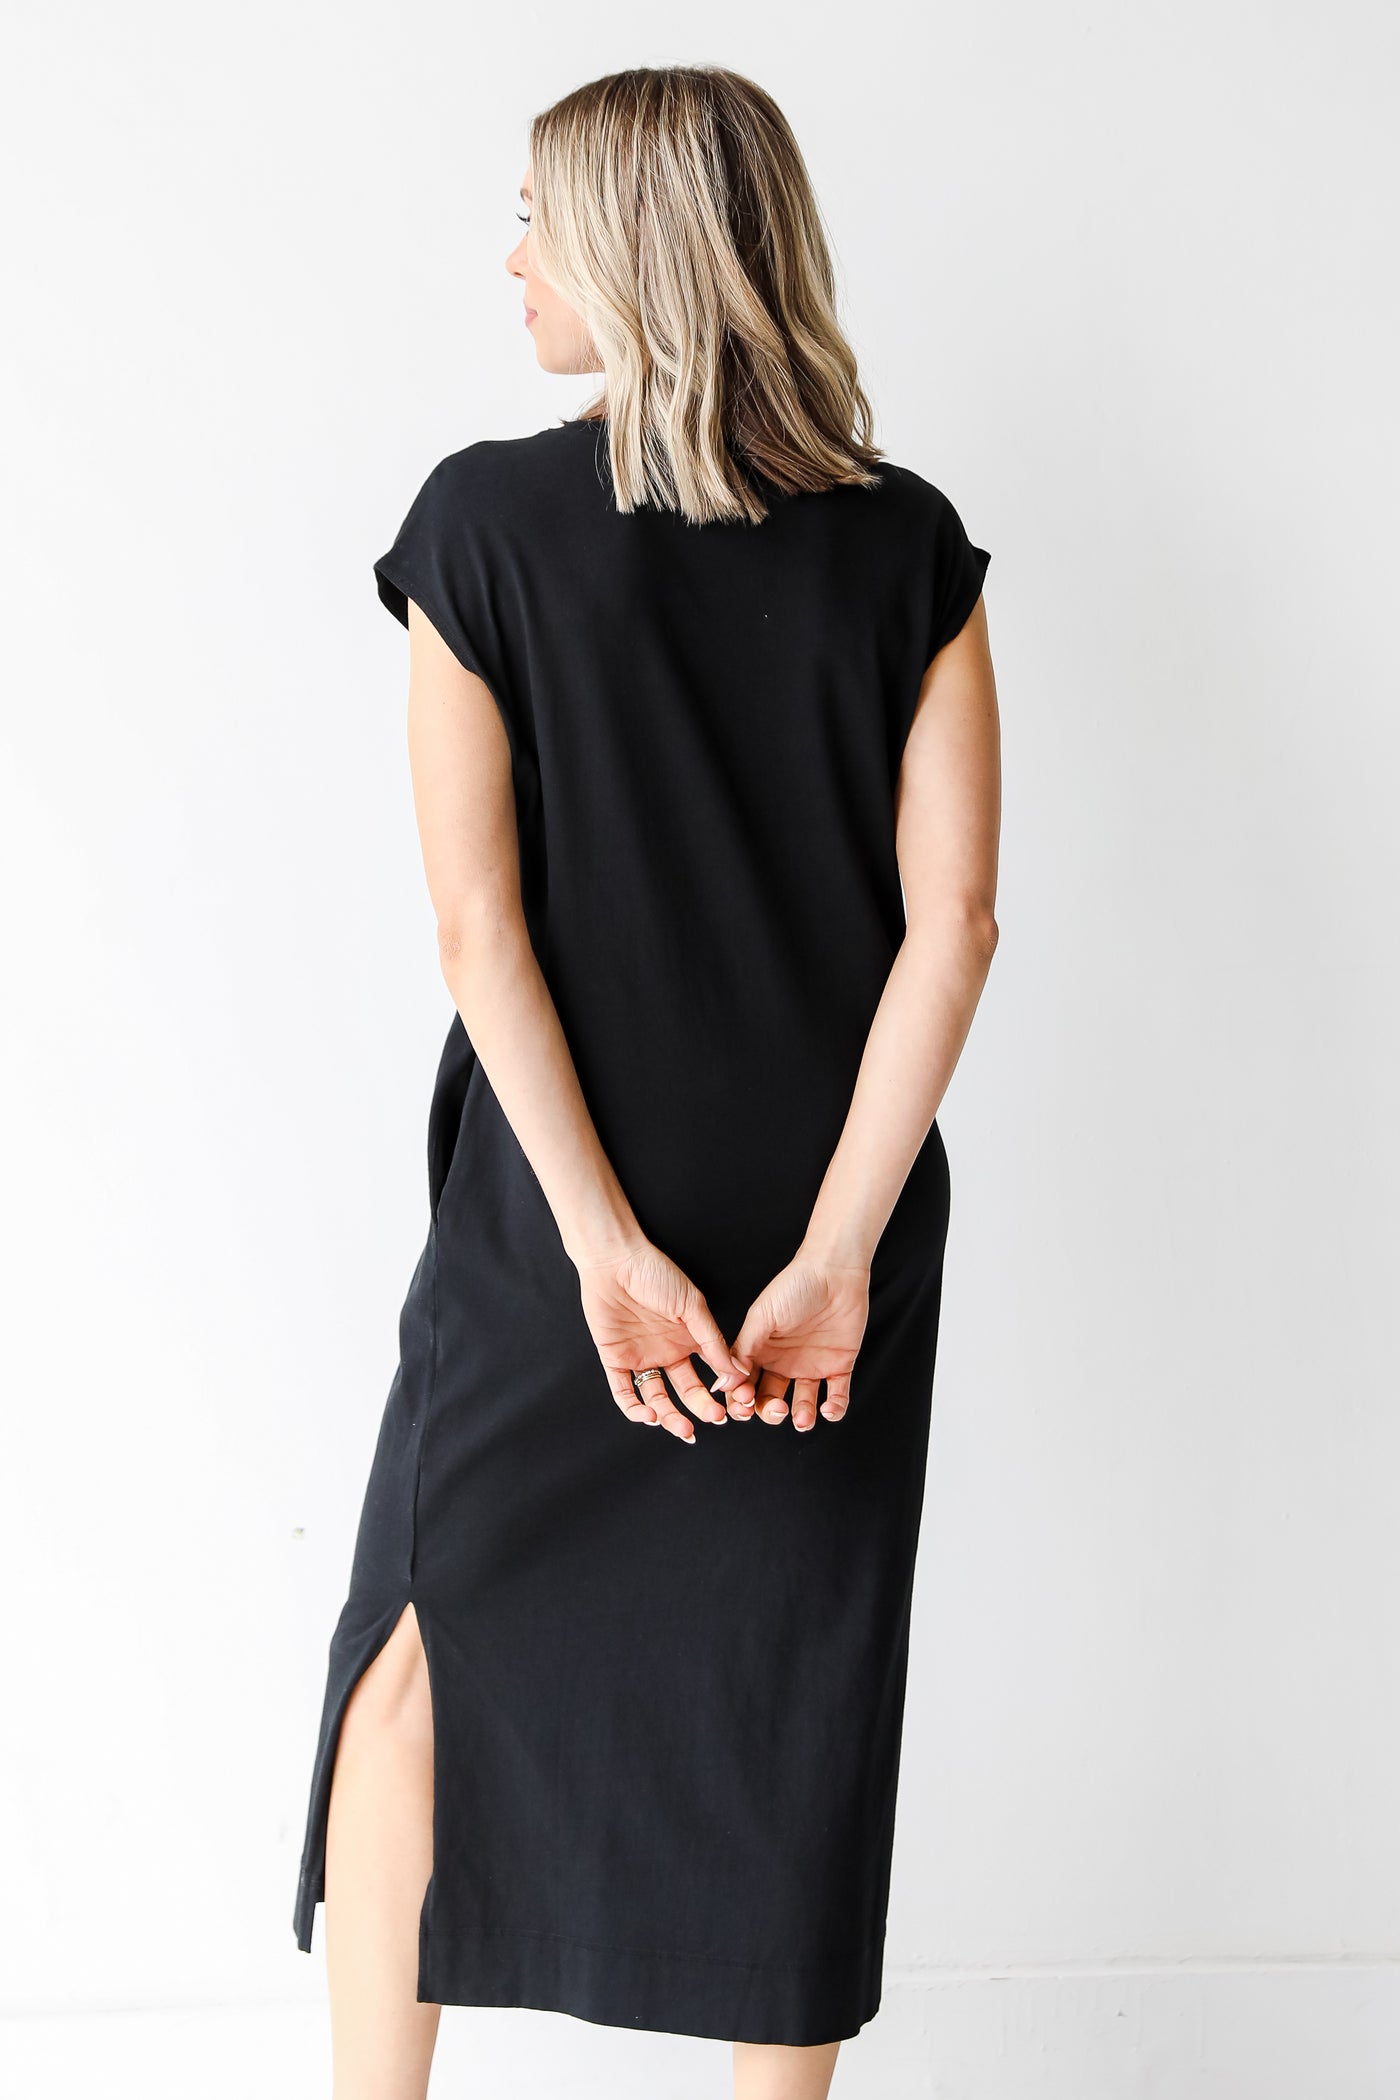 Midi Dress in black back view